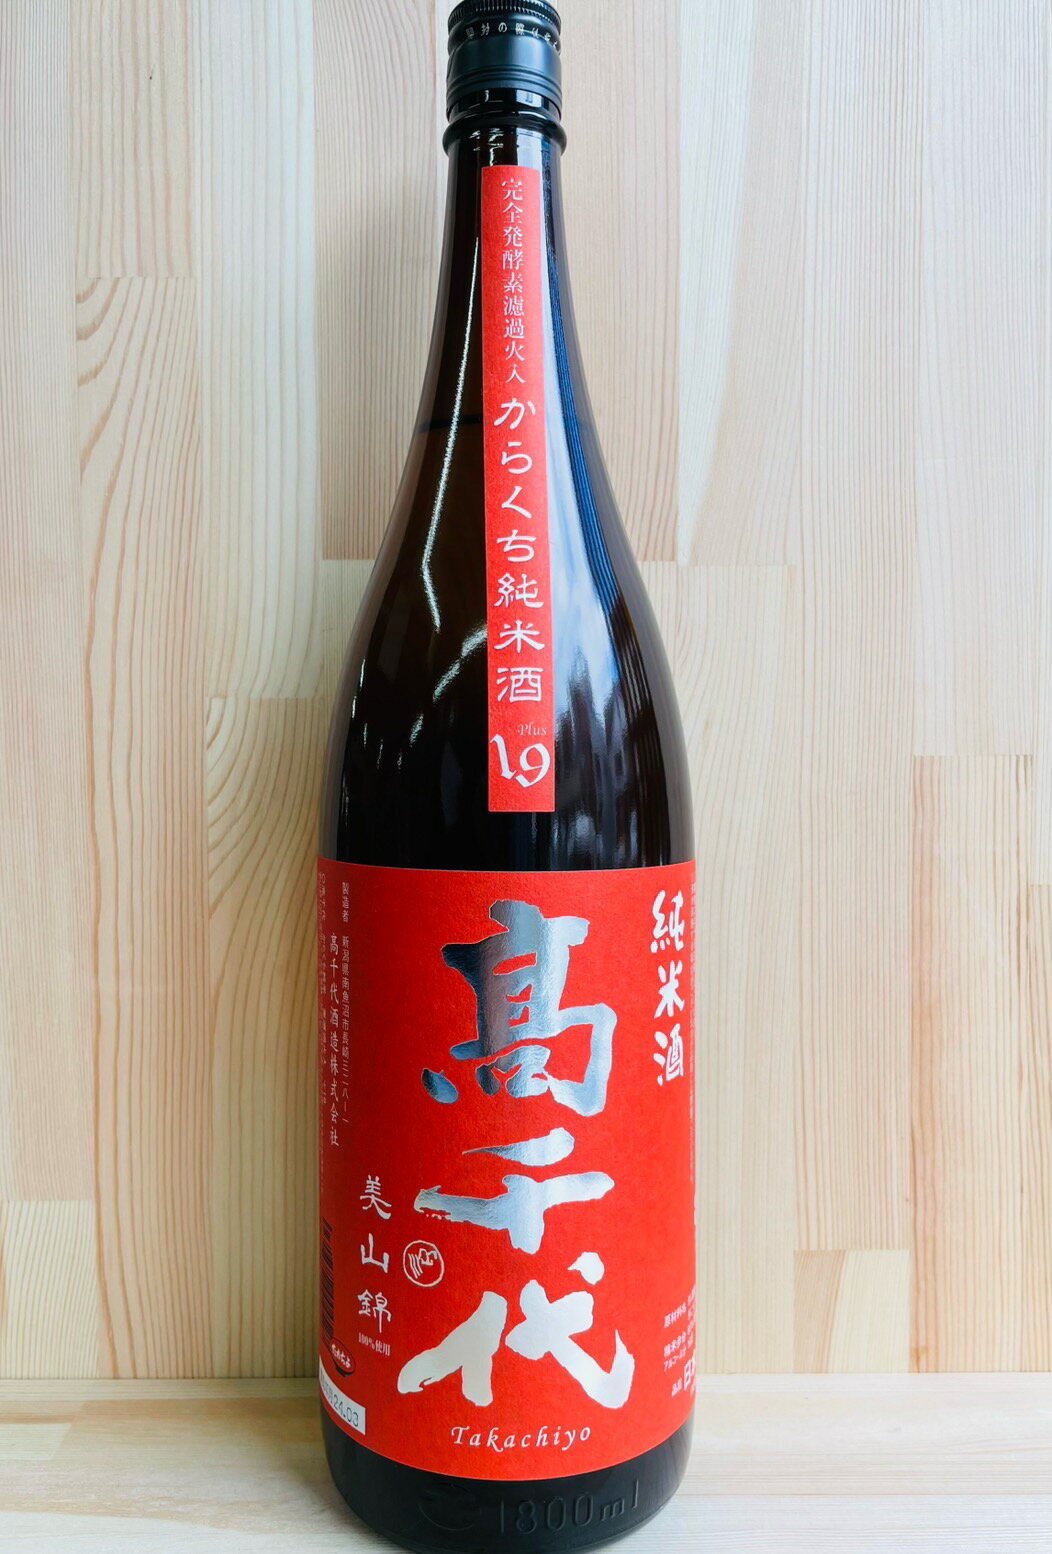 高千代 辛口 純米酒 日本酒度 19 1.8L